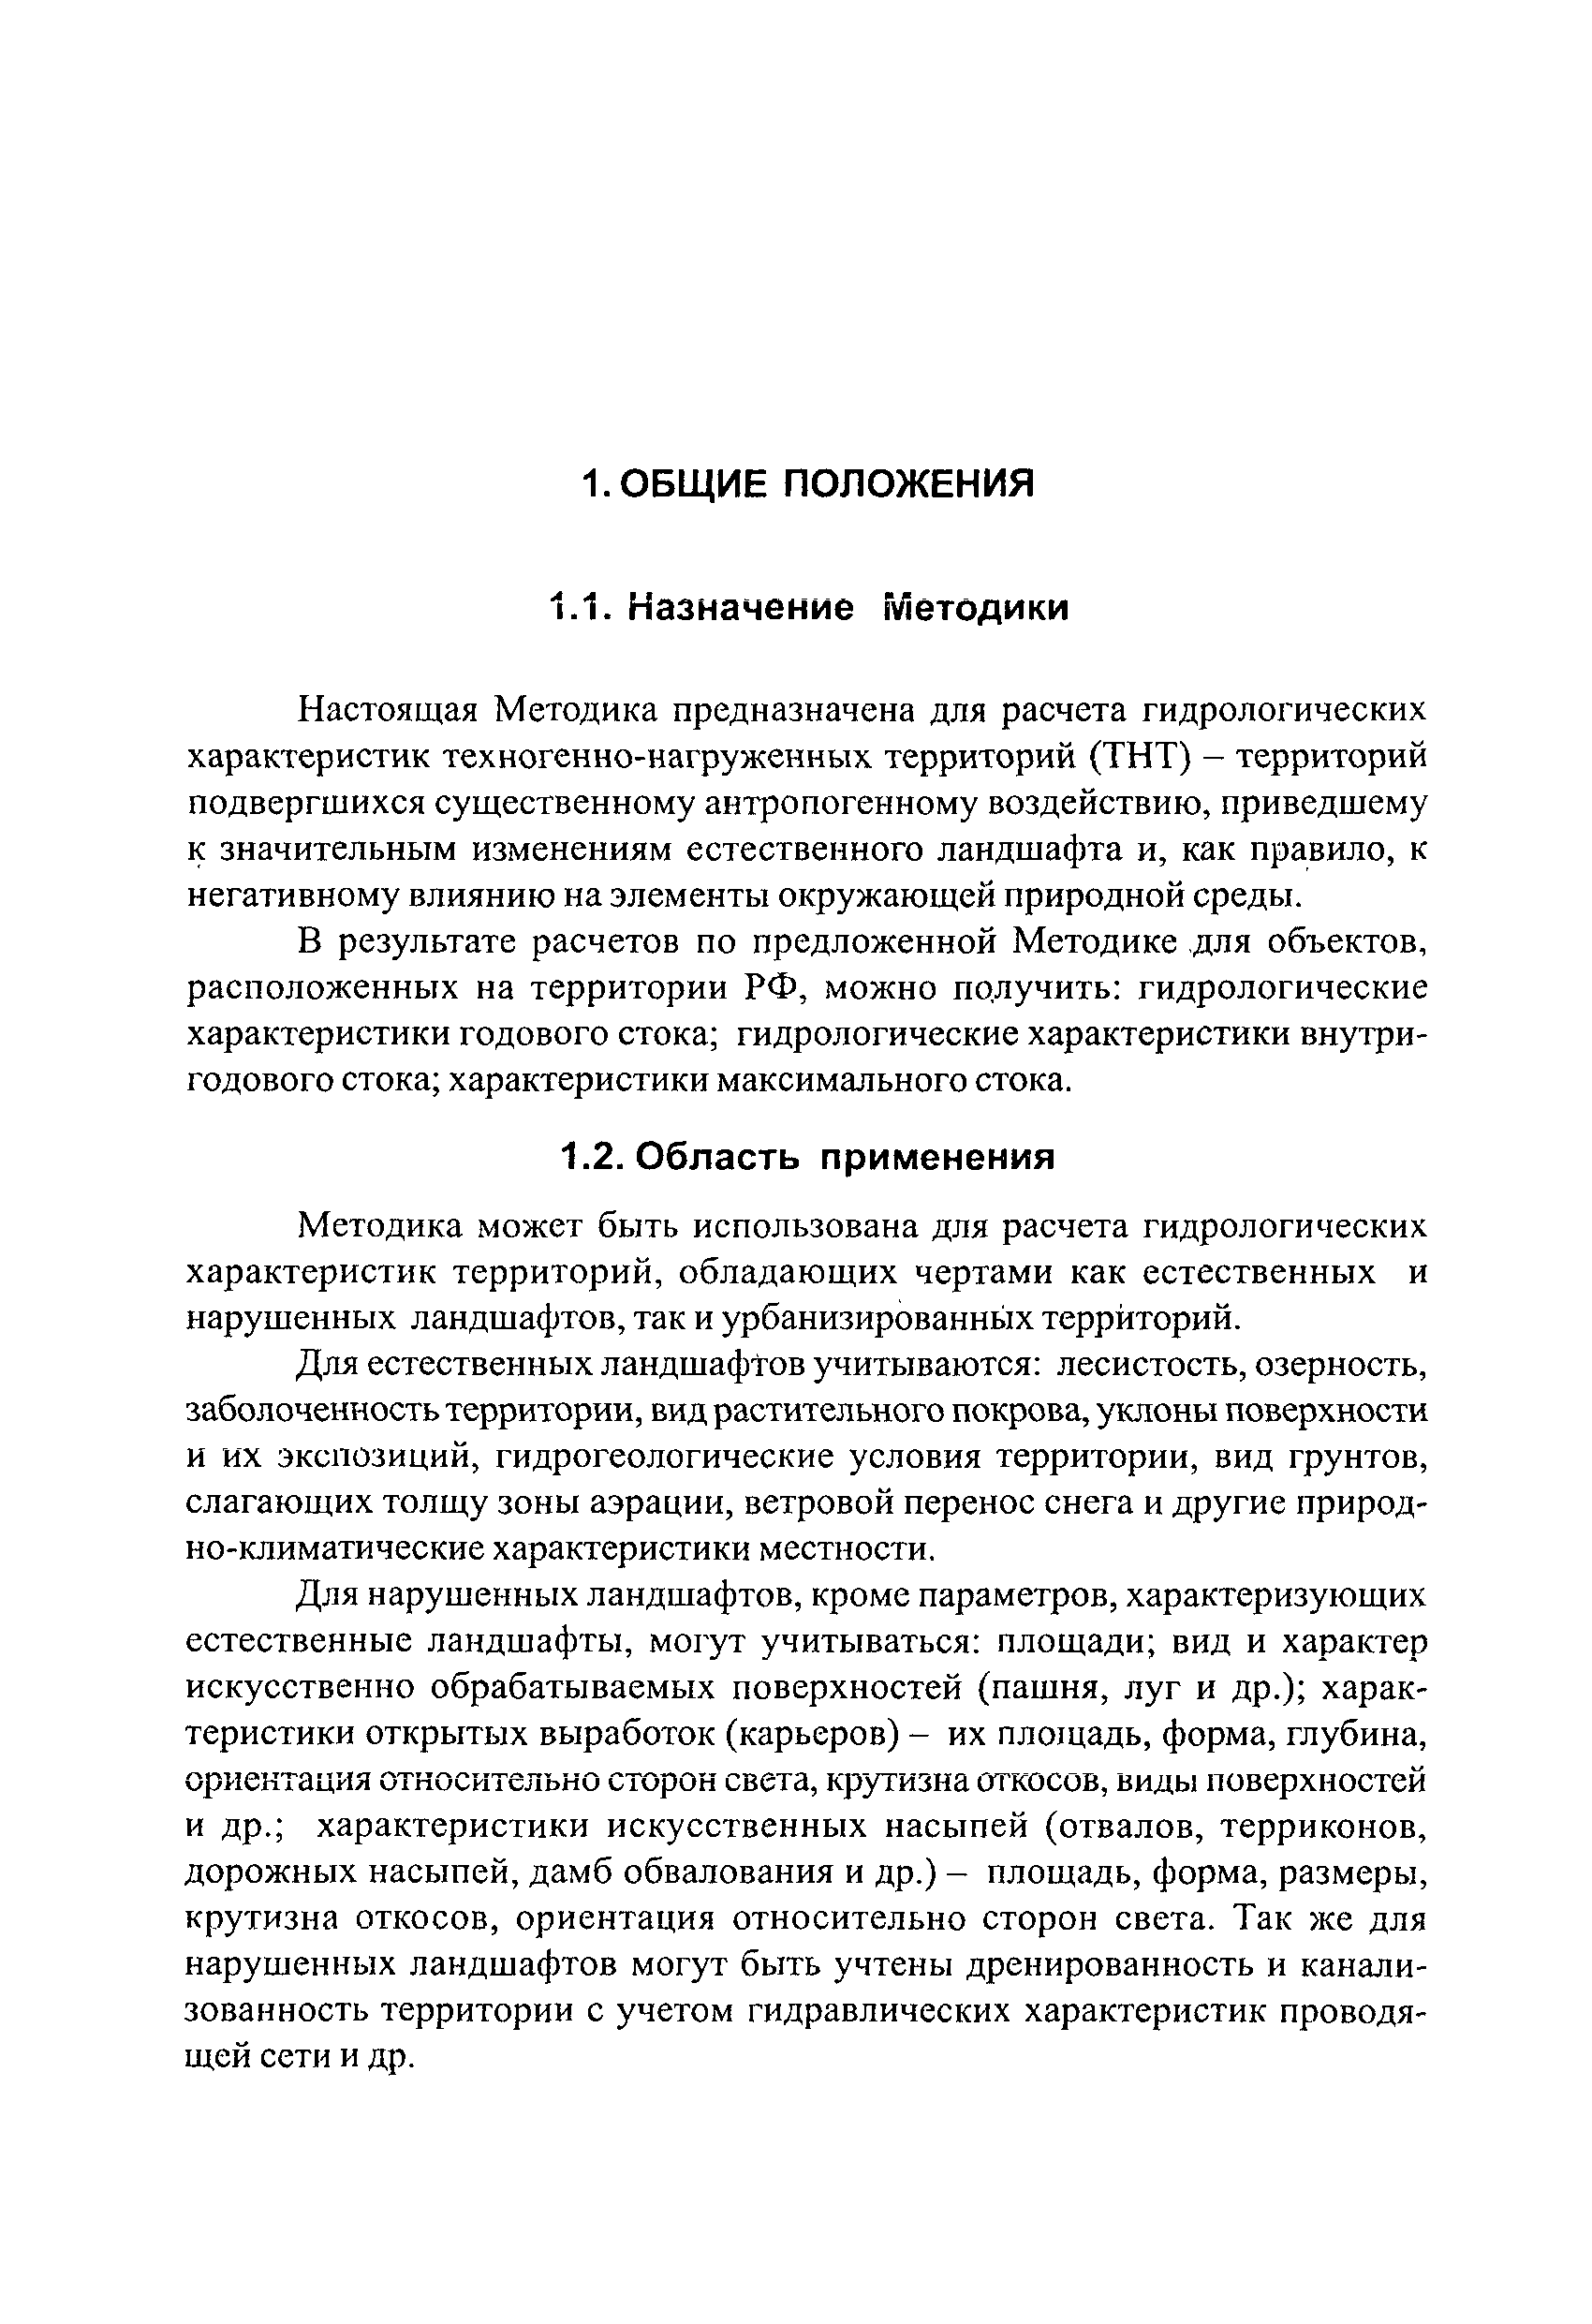 СТП ВНИИГ 210.01.НТ-05